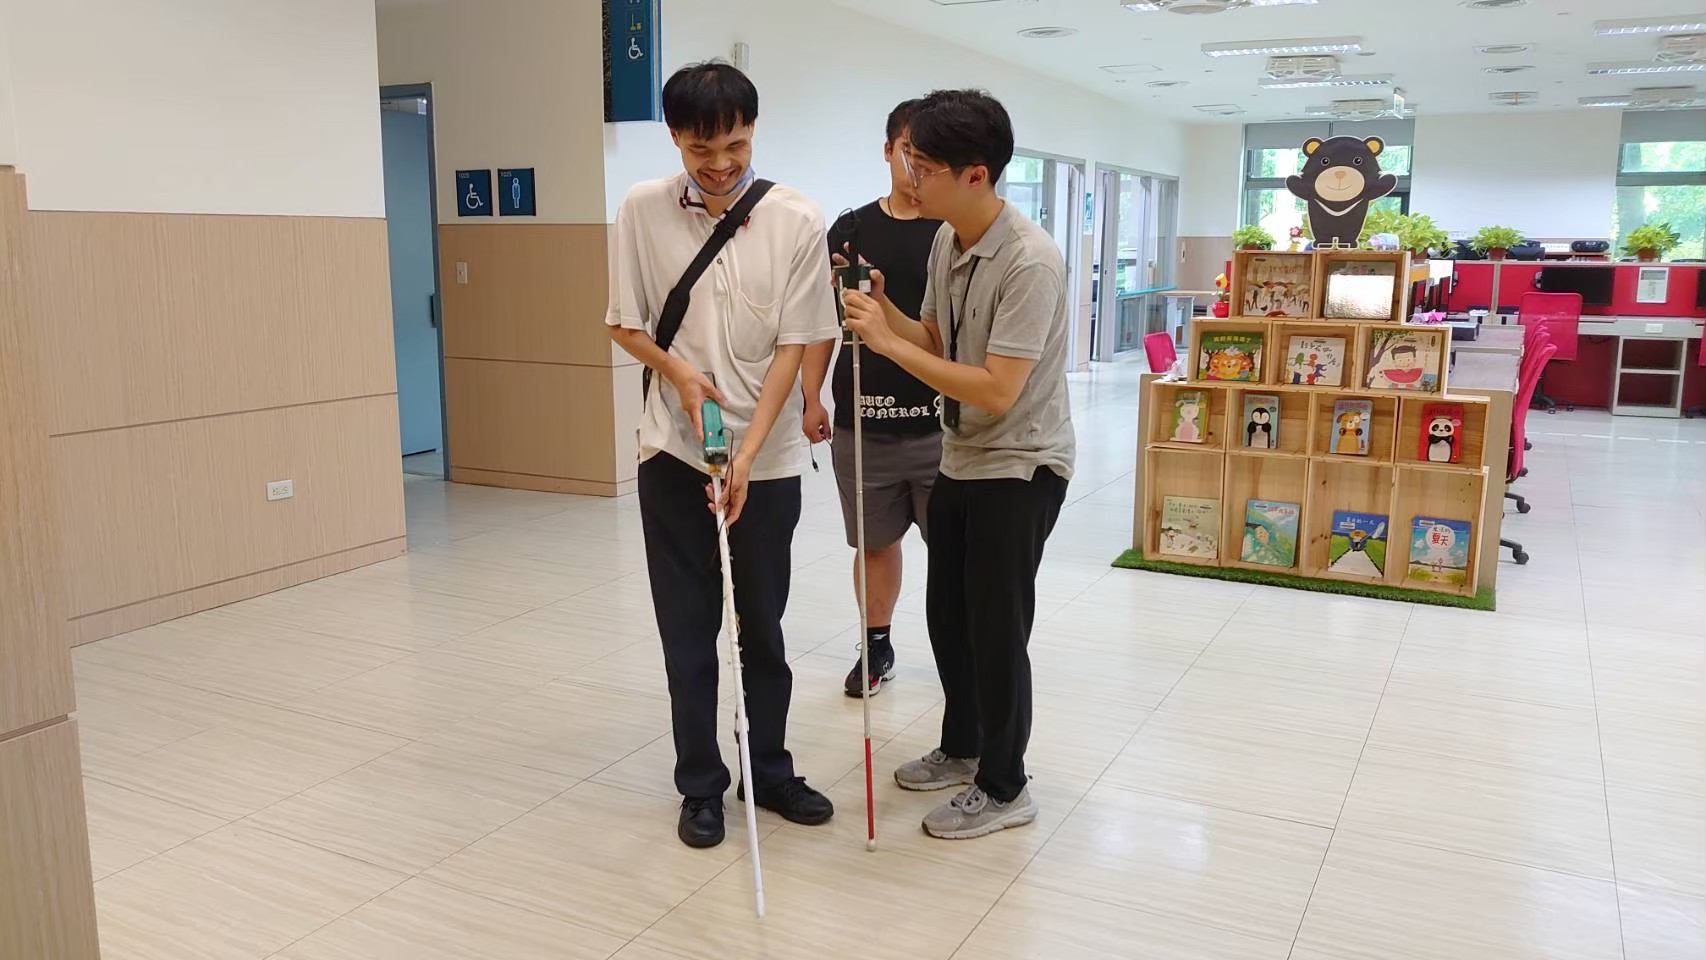 視障人士試用「智慧導盲杖」情景照